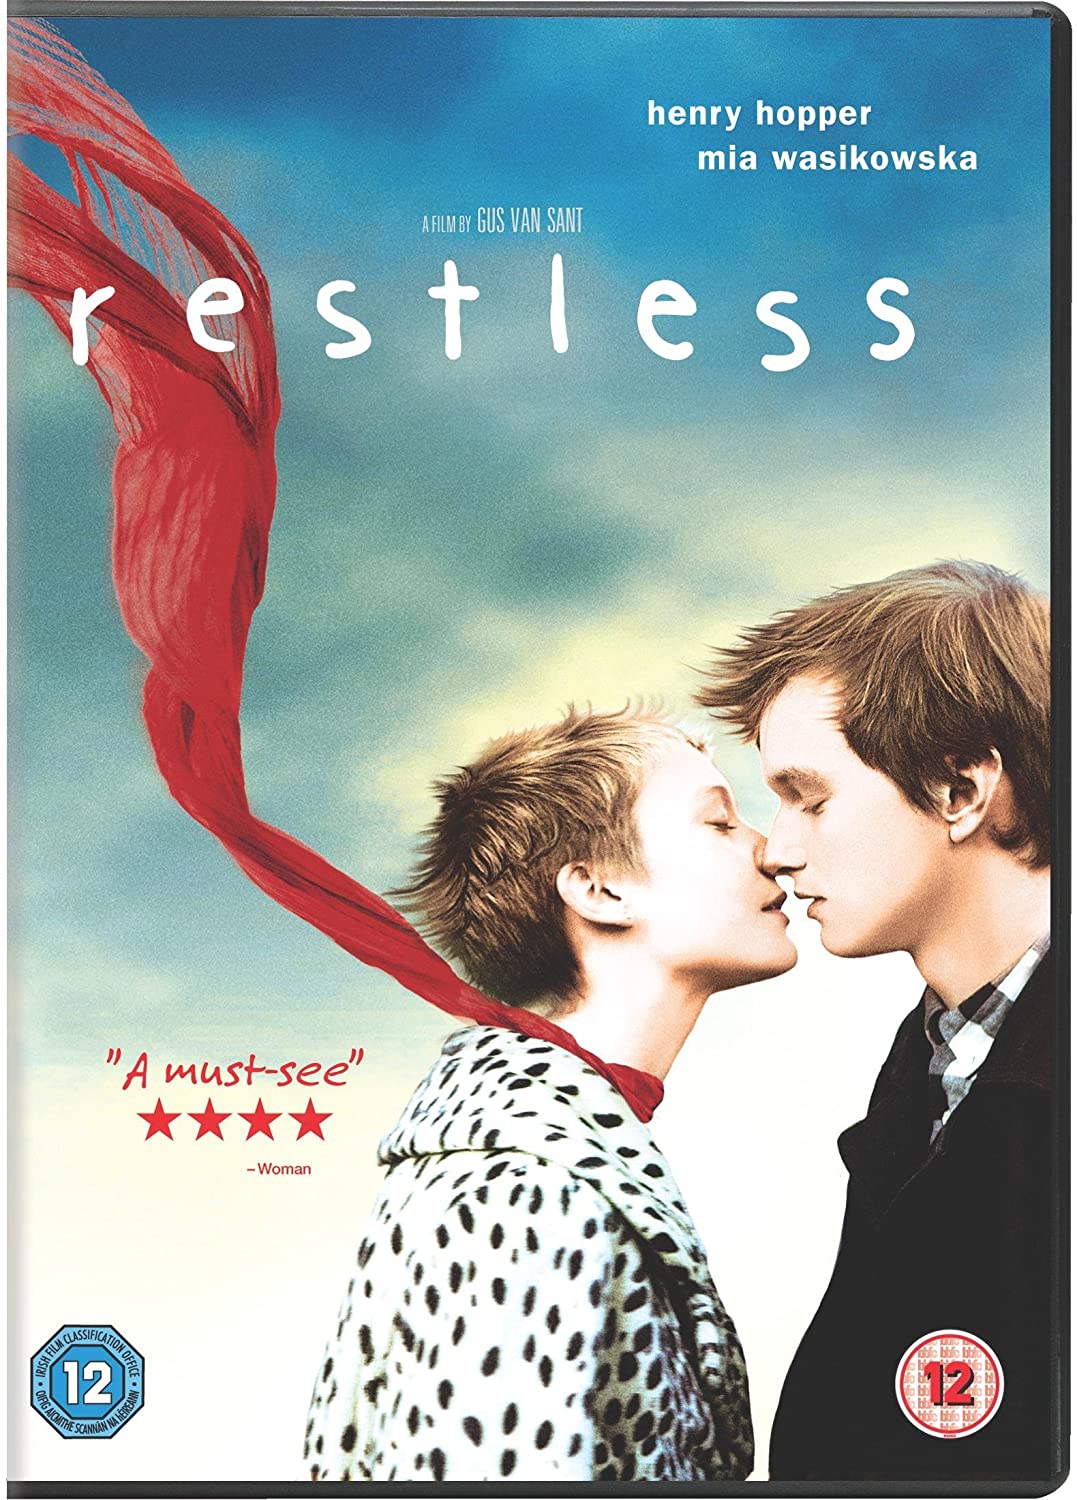 Restless [2011] - Drama [DVD]